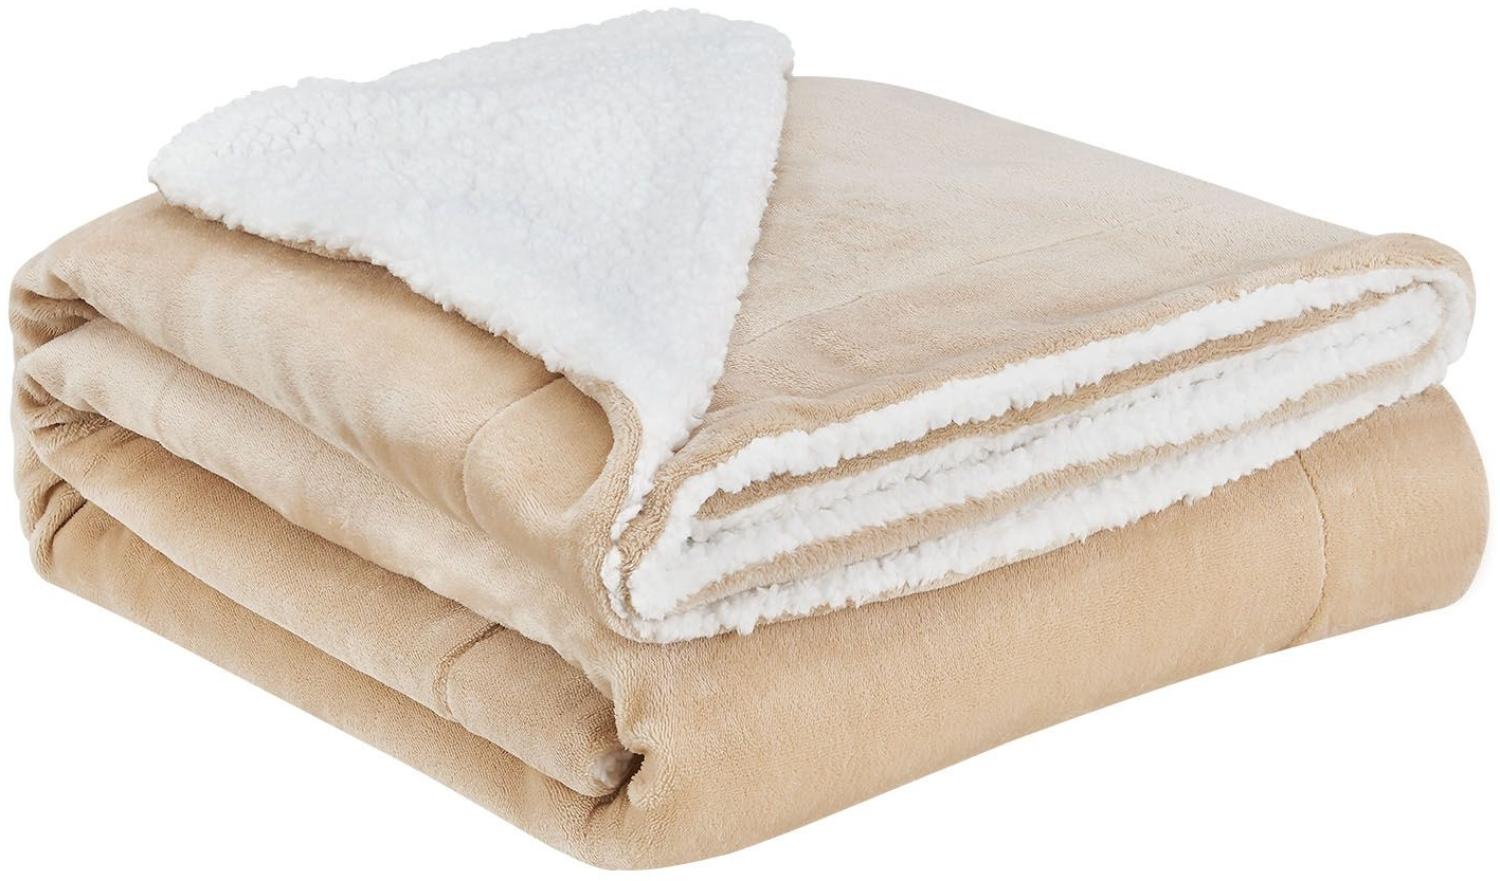 Juskys Fleecedecke 150x200 cm mit Sherpa - flauschig, warm, waschbar - Decke für Bett und Couch - Tagesdecke, Kuscheldecke Sand Bild 1